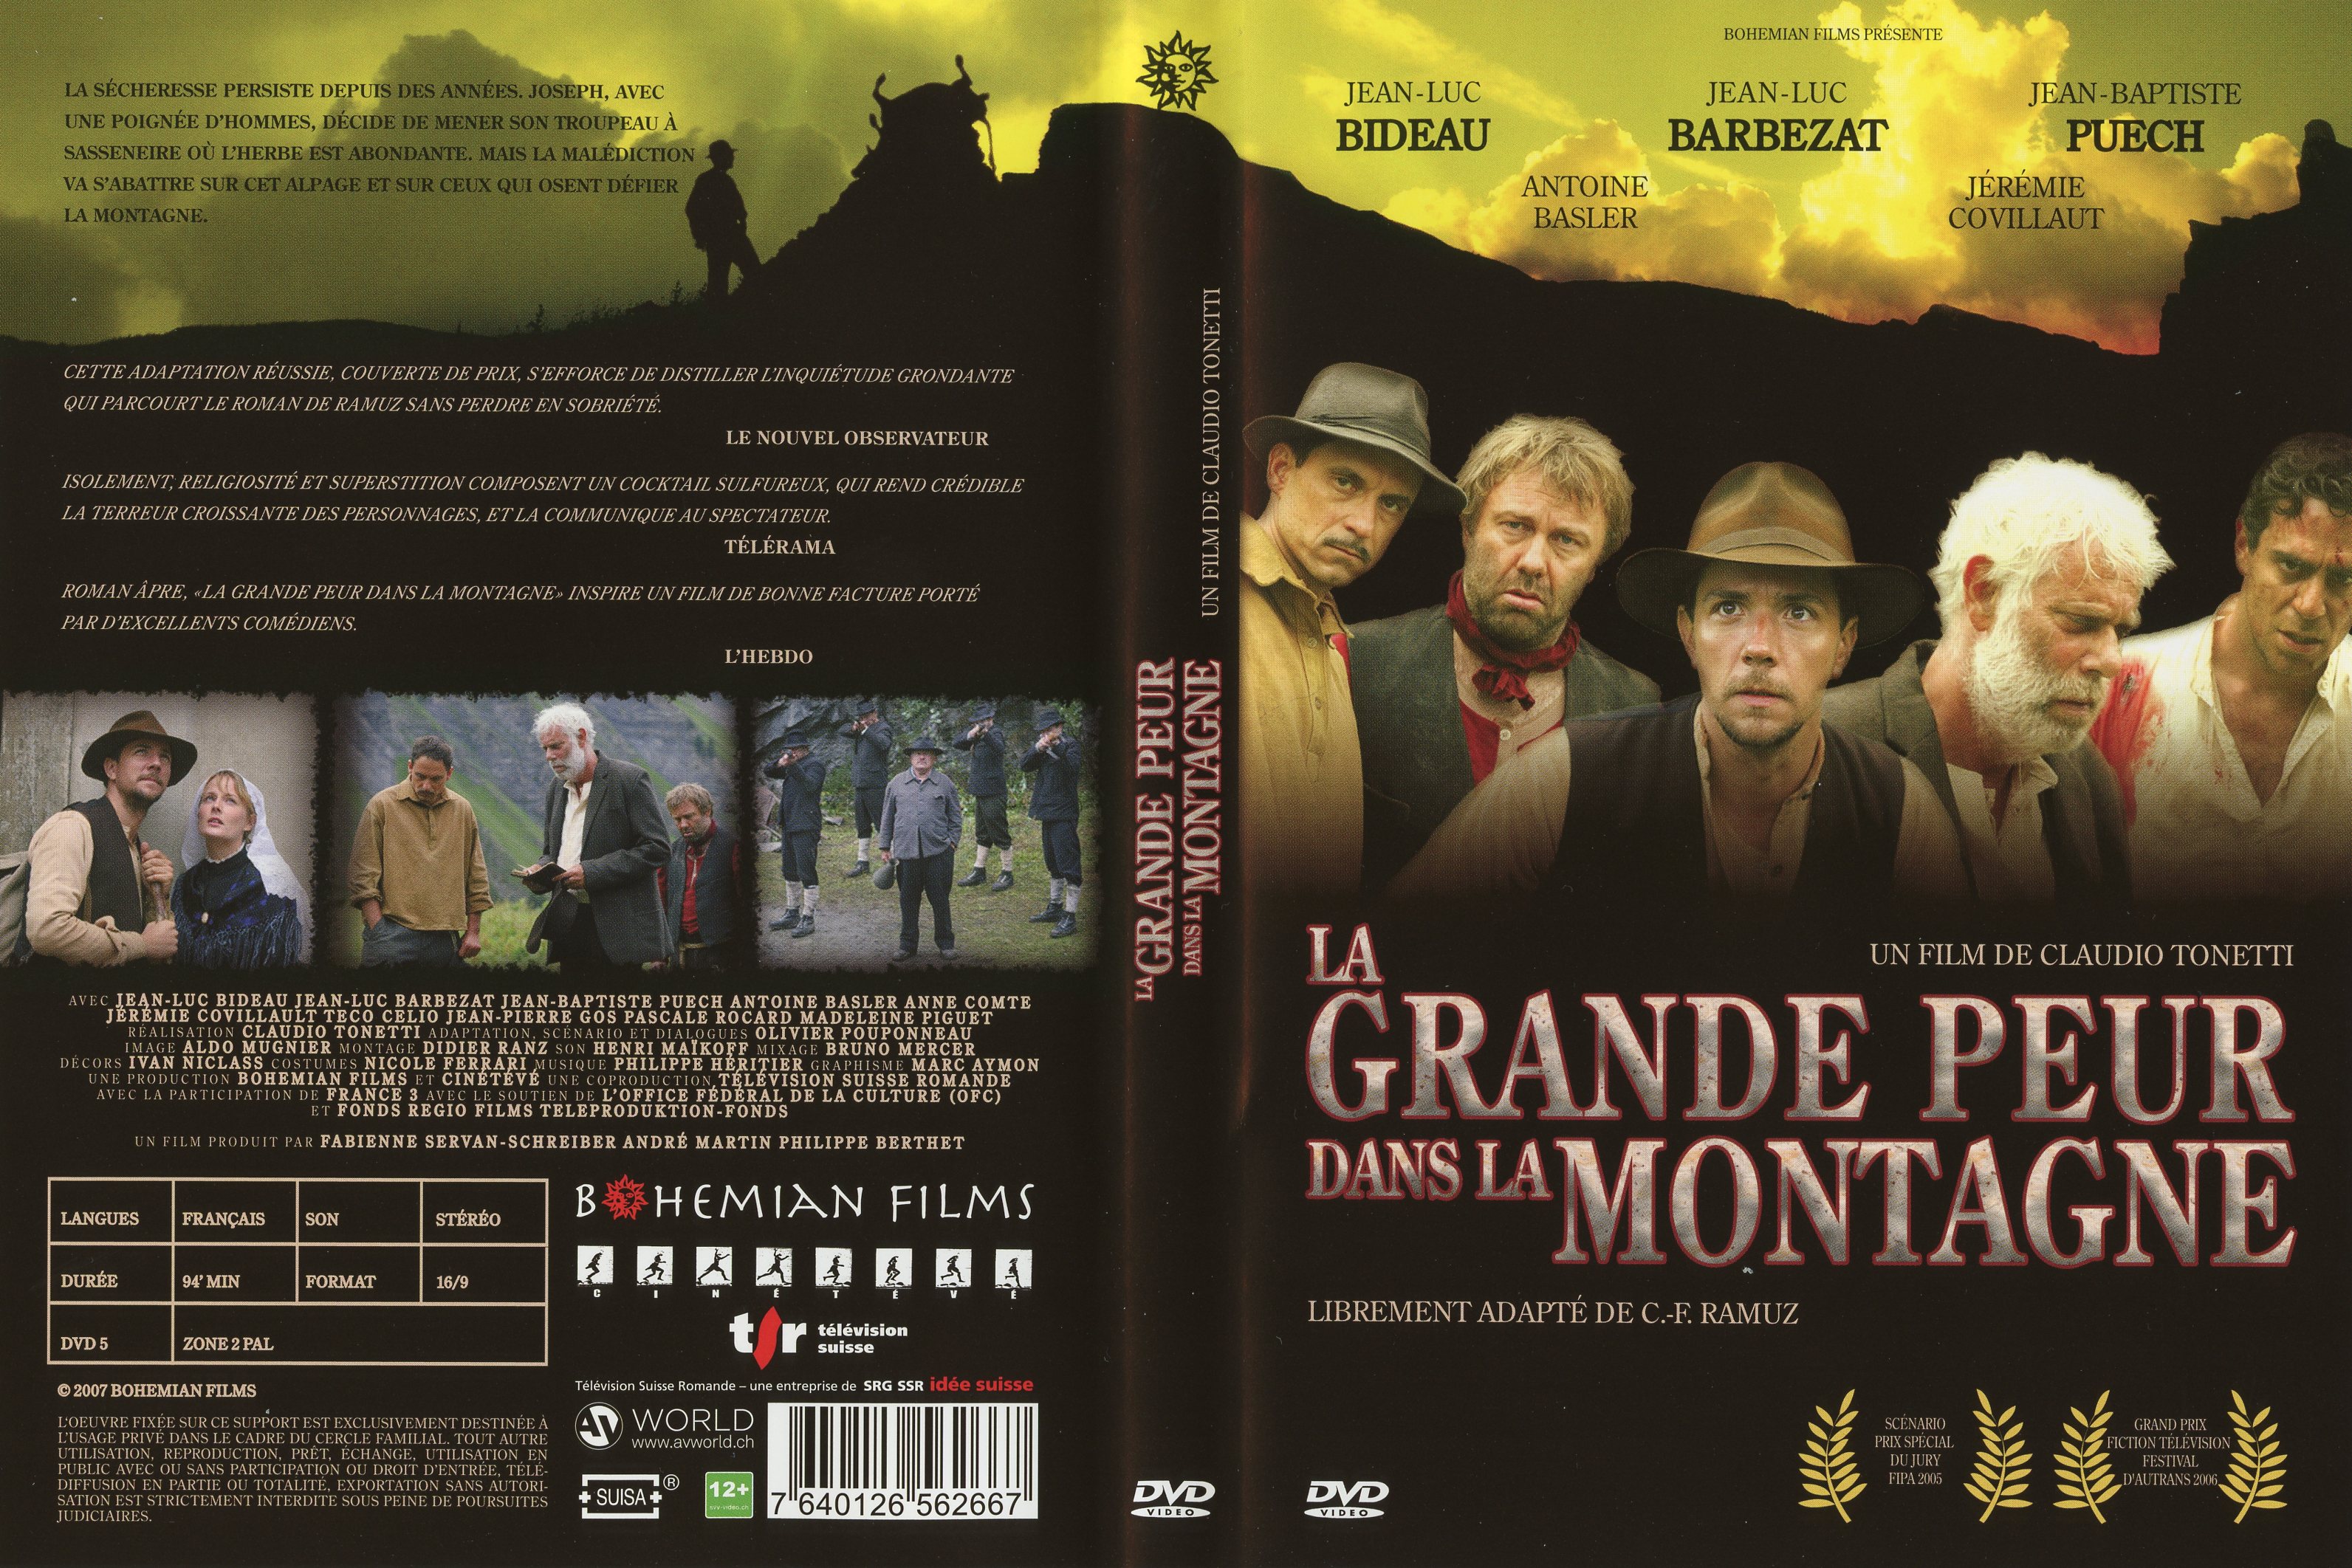 Jaquette DVD La grande peur dans la montagne